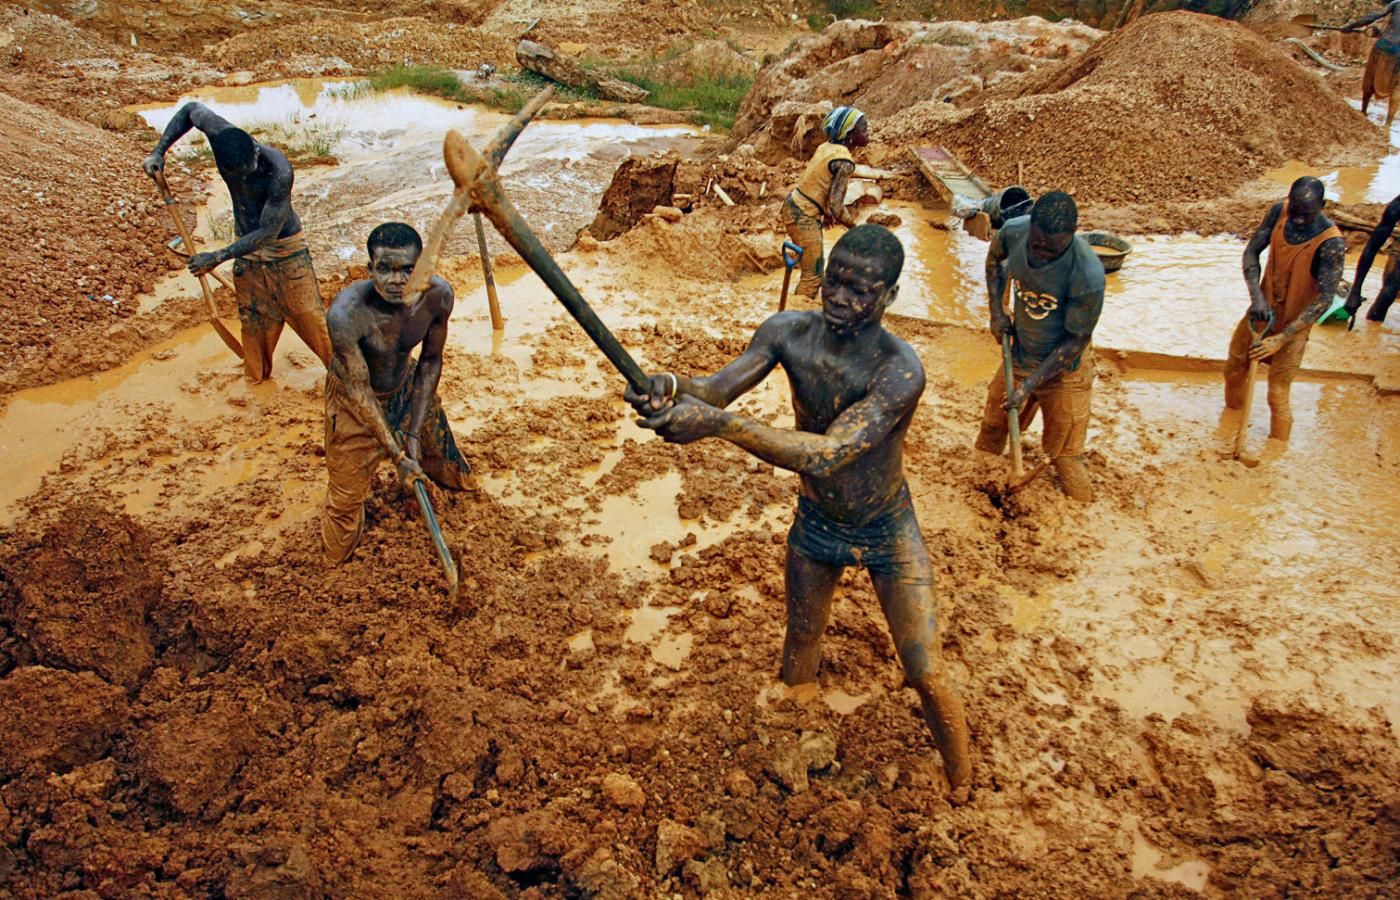 Dzika kopalnia złota w miejscowości Dunkwa w Ghanie – zdjęcie z lutego 2011 r.